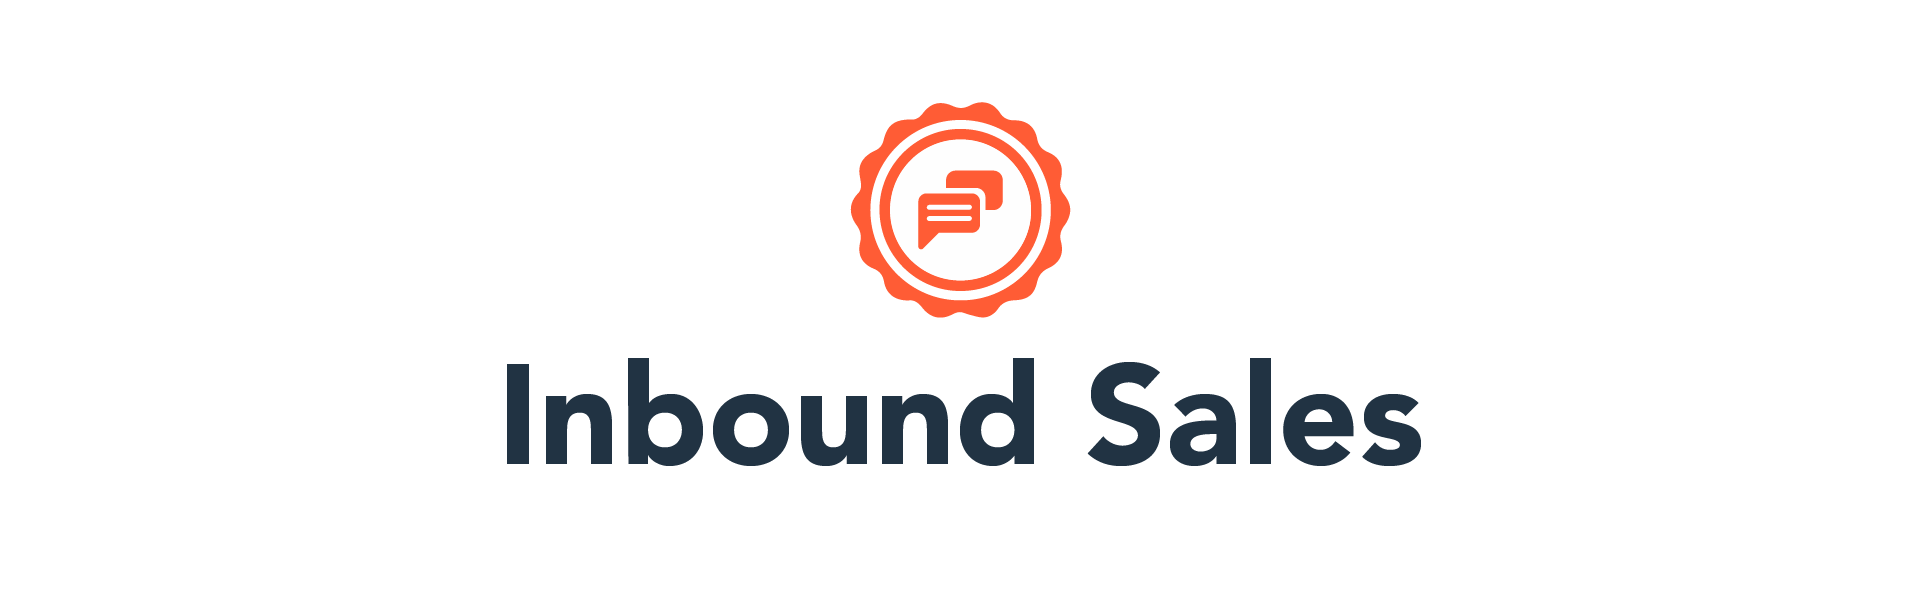 inbound sales